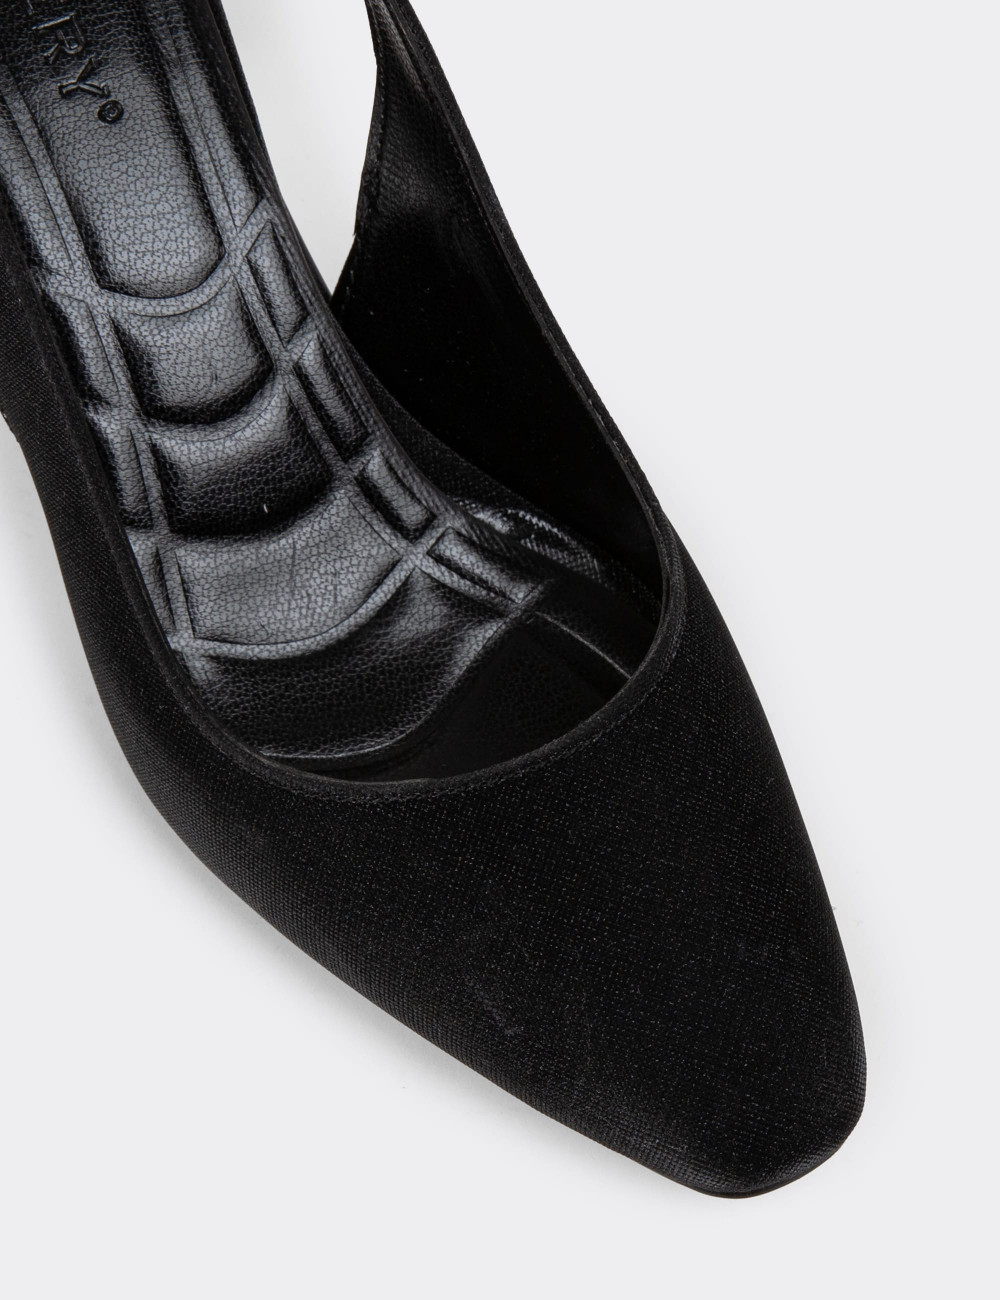 Siyah Simli Kadın Topuklu Ayakkabı - K0803ZSYHM01